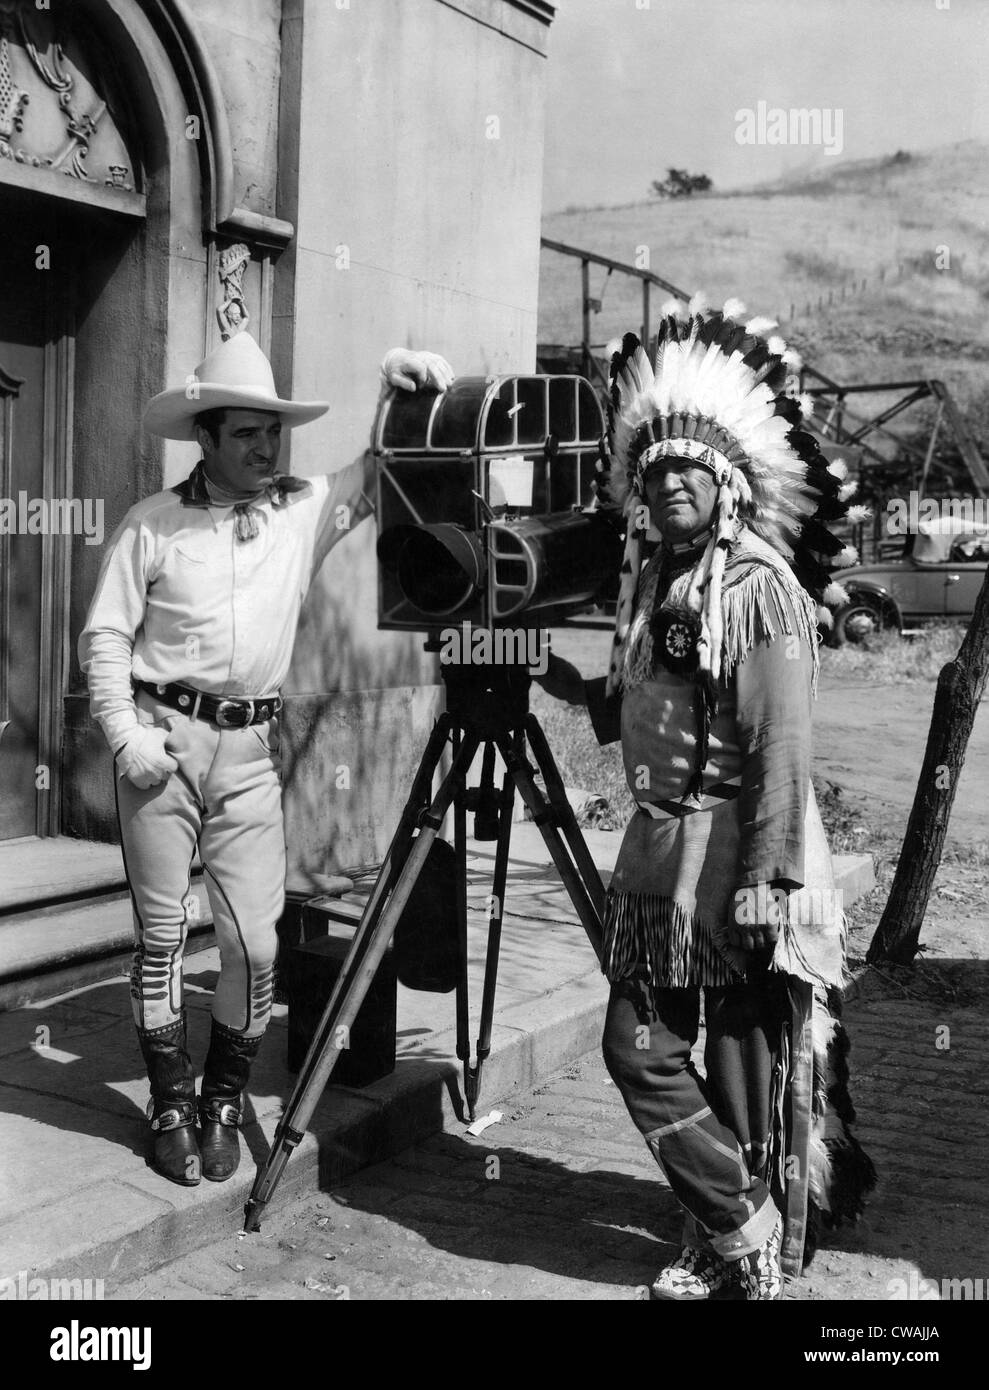 Ma PAL, le roi, Tom Mix, Jim Thorpe, on set, 1932.. Avec la permission de la CSU : Archives / Everett Collection Banque D'Images